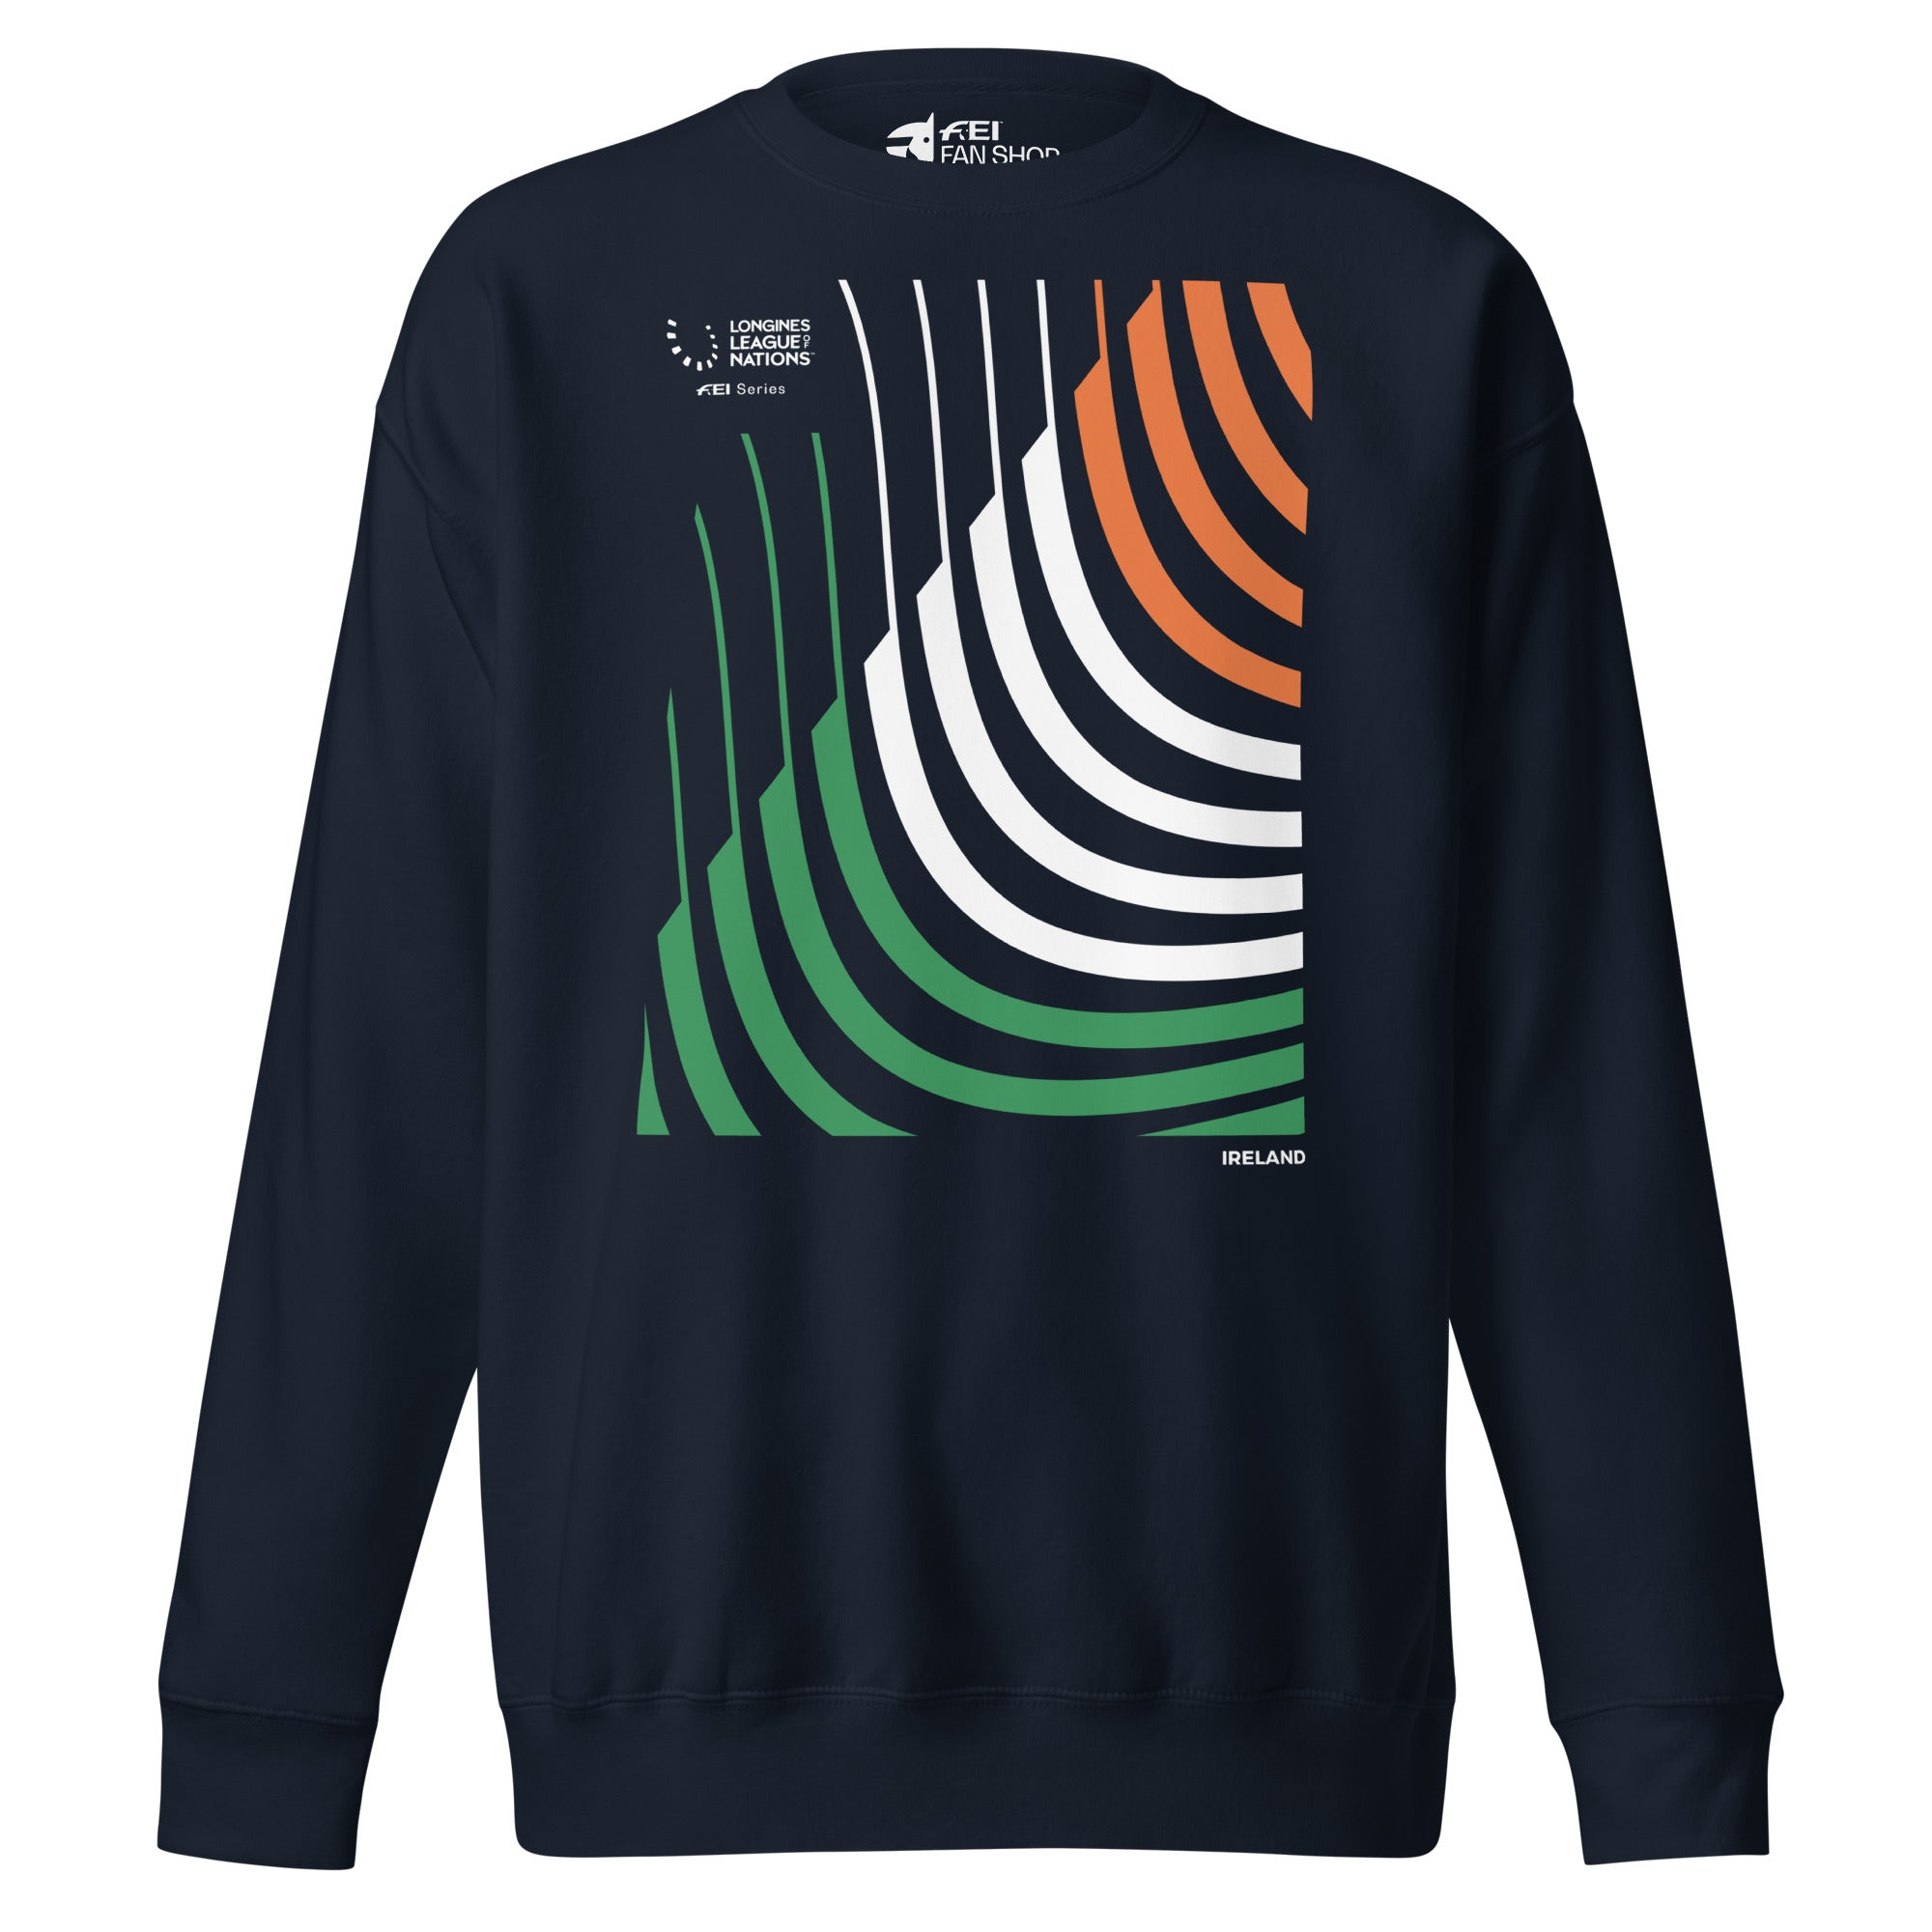 LLN Ireland Sweatshirt